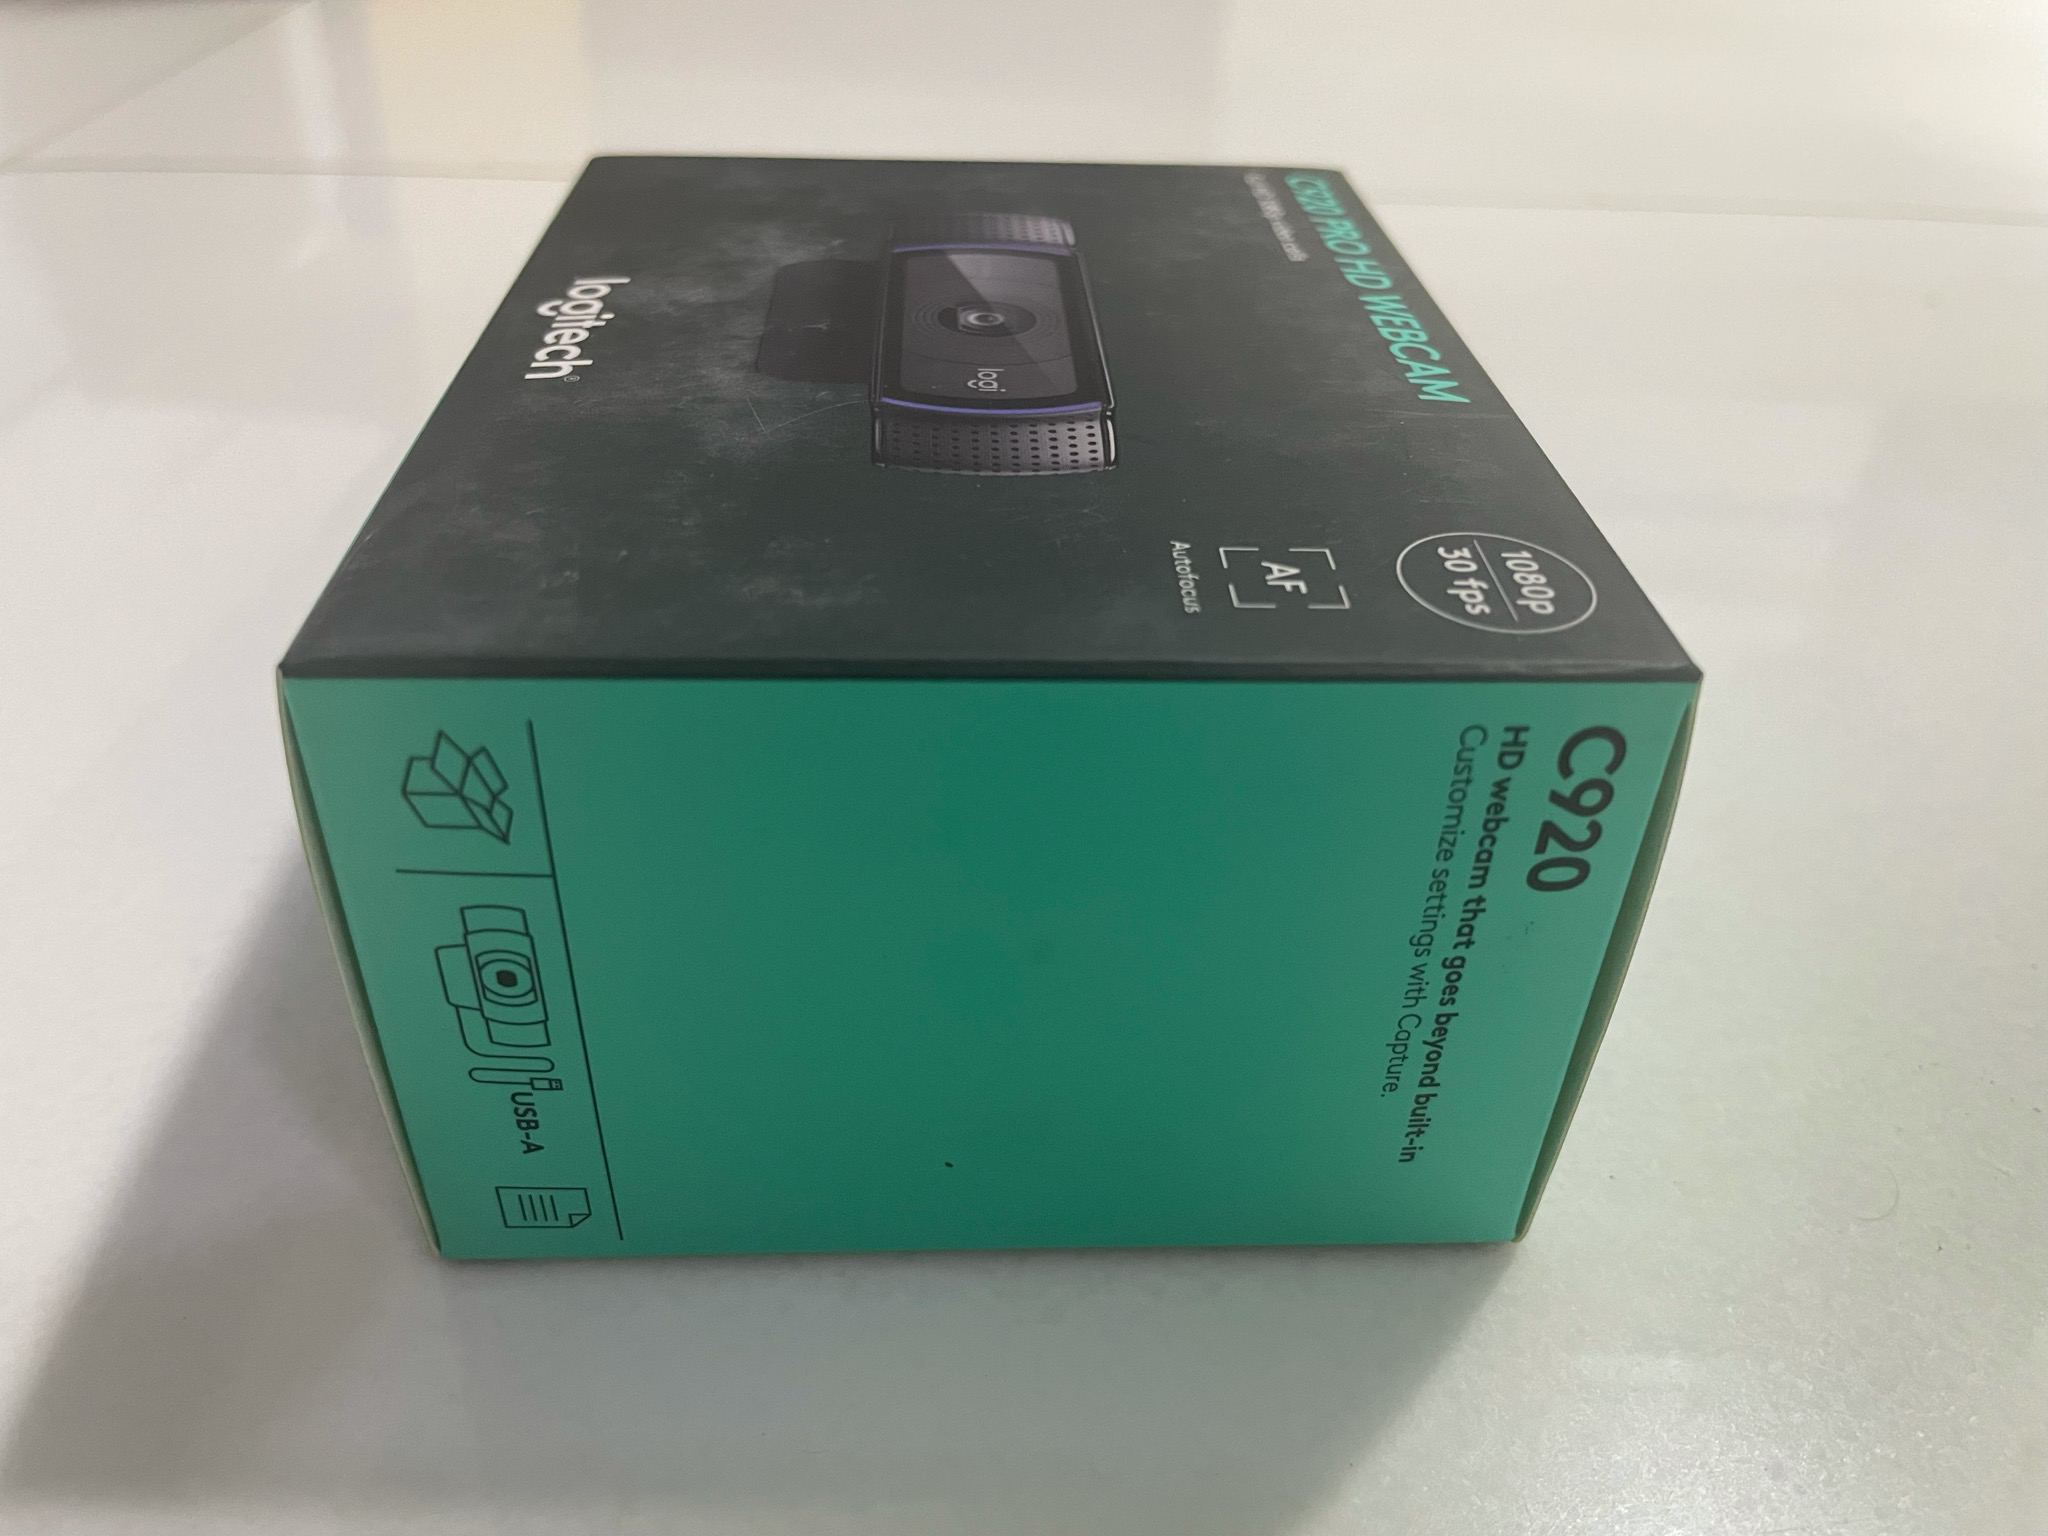 Black 1080 P Logitech C920 Hd Pro Webcam at Rs 9500 in Pune